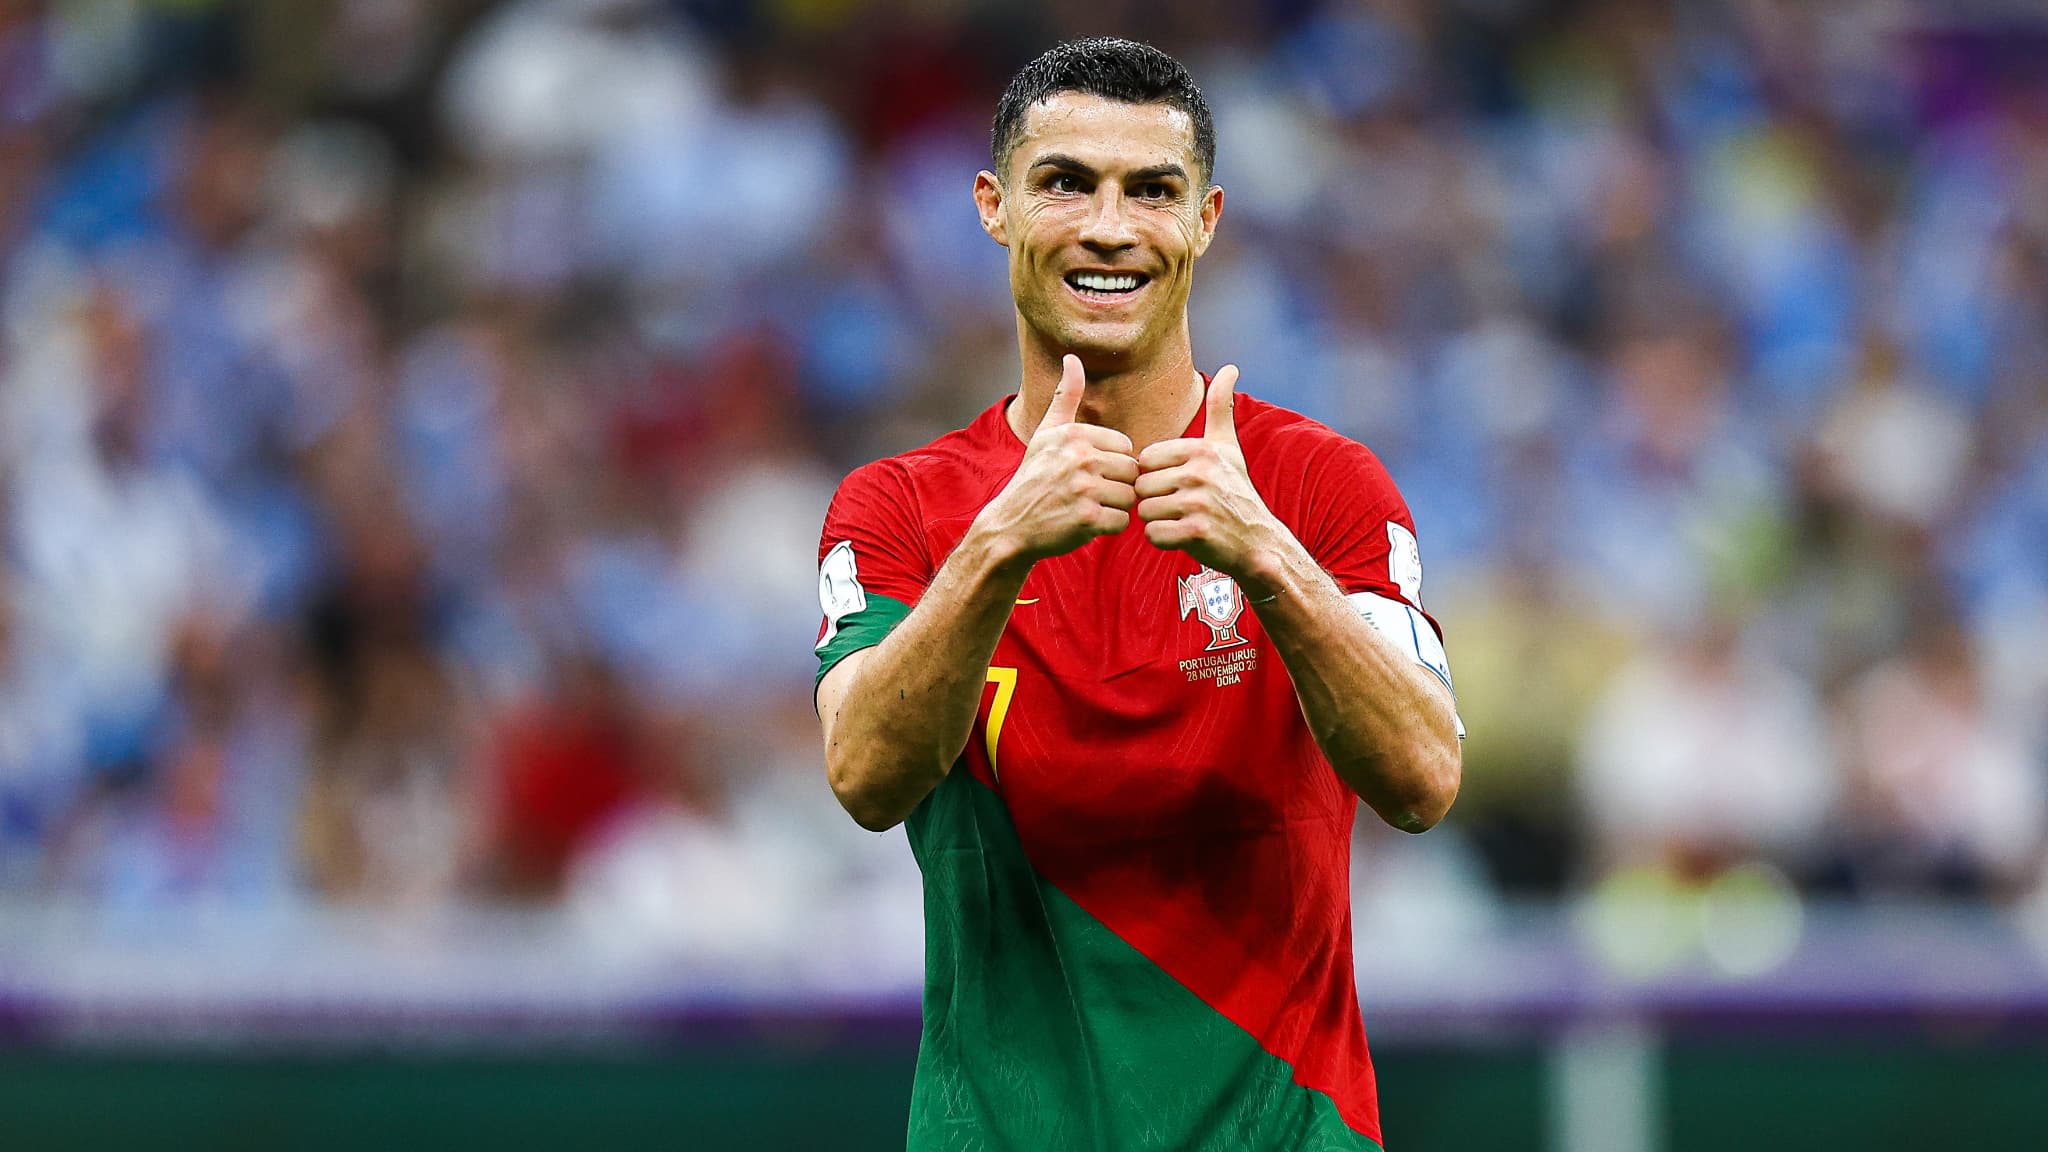 Transmisja na żywo – Mercato: Cristiano Ronaldo dołączy do Al-Nassr w Arabii Saudyjskiej, według hiszpańskich gazet